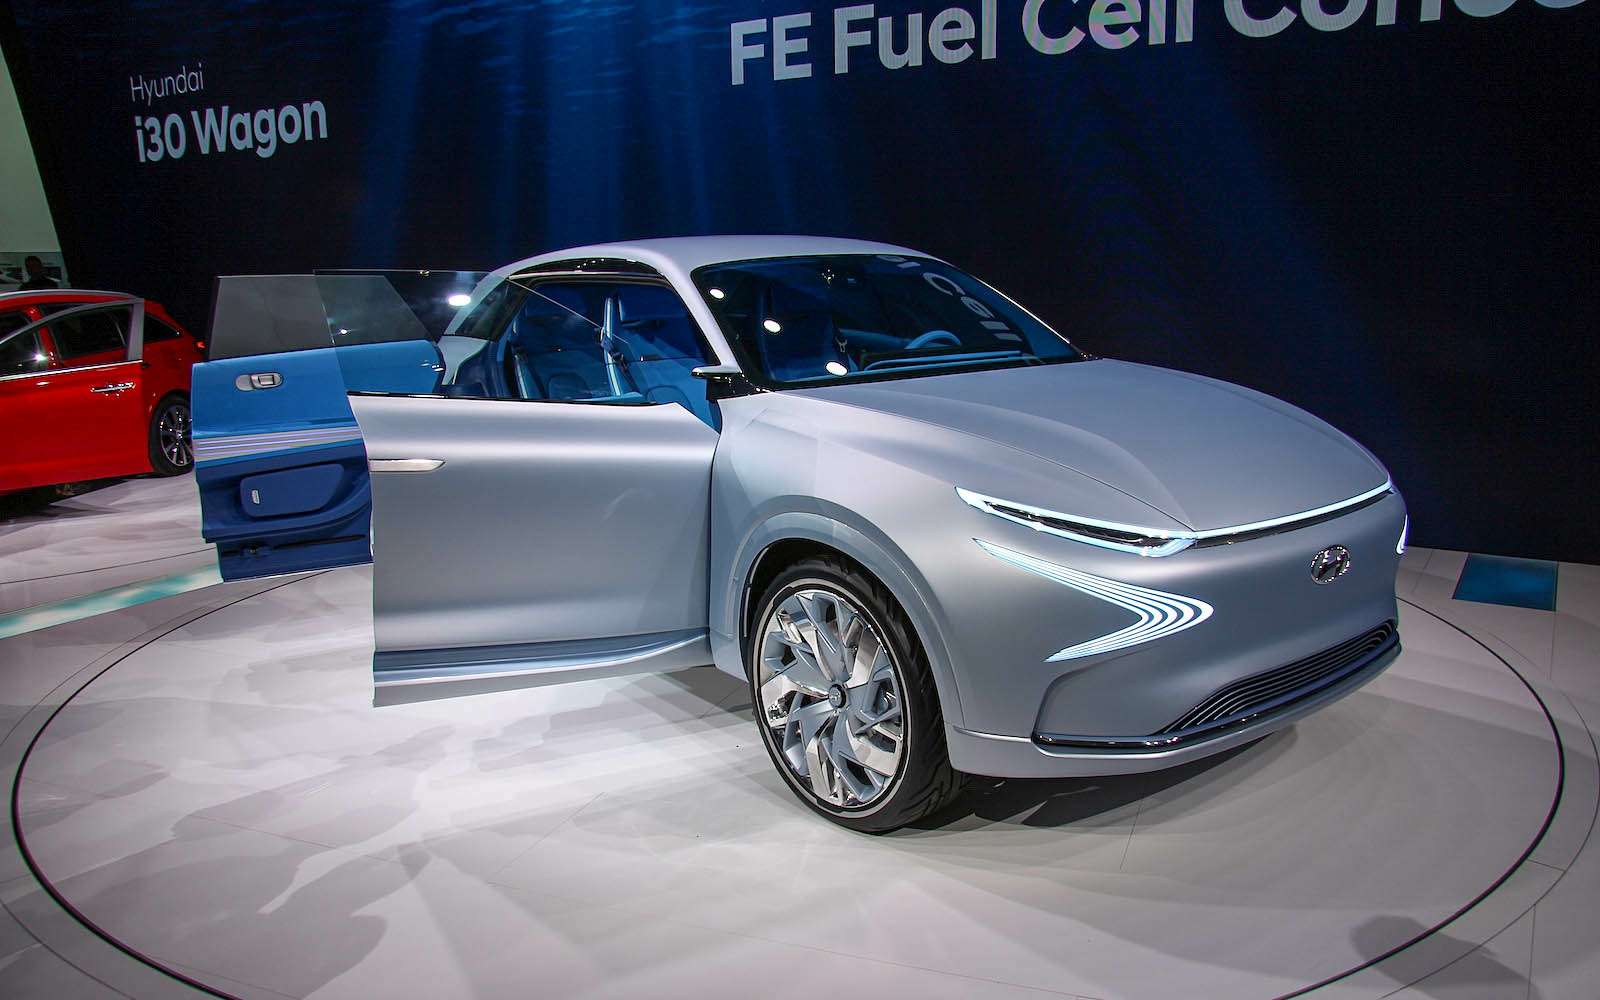 Еще одной премьерой стал показ прототипа водородомобиля FE Fuel Cell Concept, который в следующем году запустят в серийное производство — это будет первая машина такого типа из Страны утренней свежести.